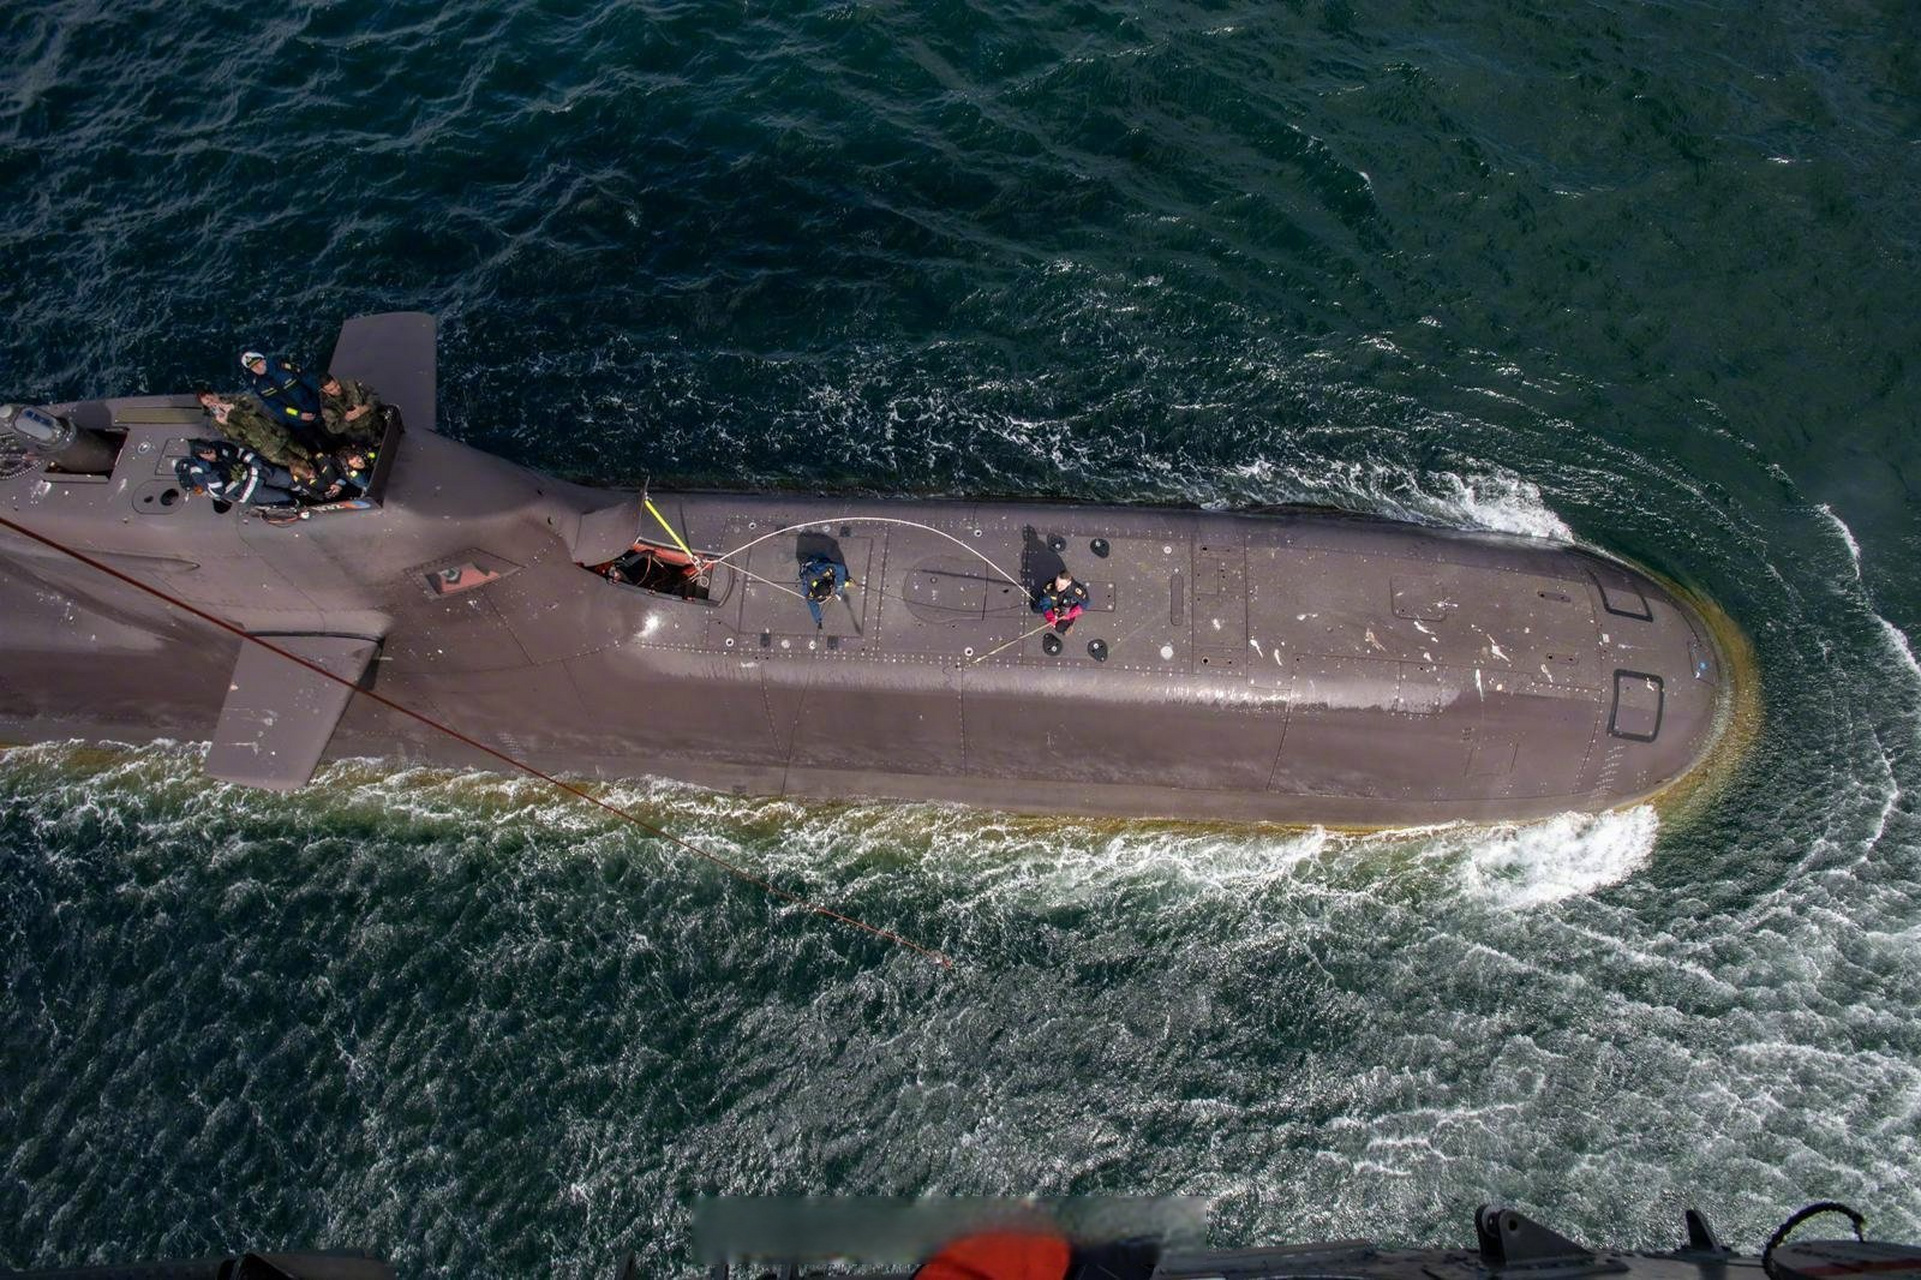 德国212a潜艇图片